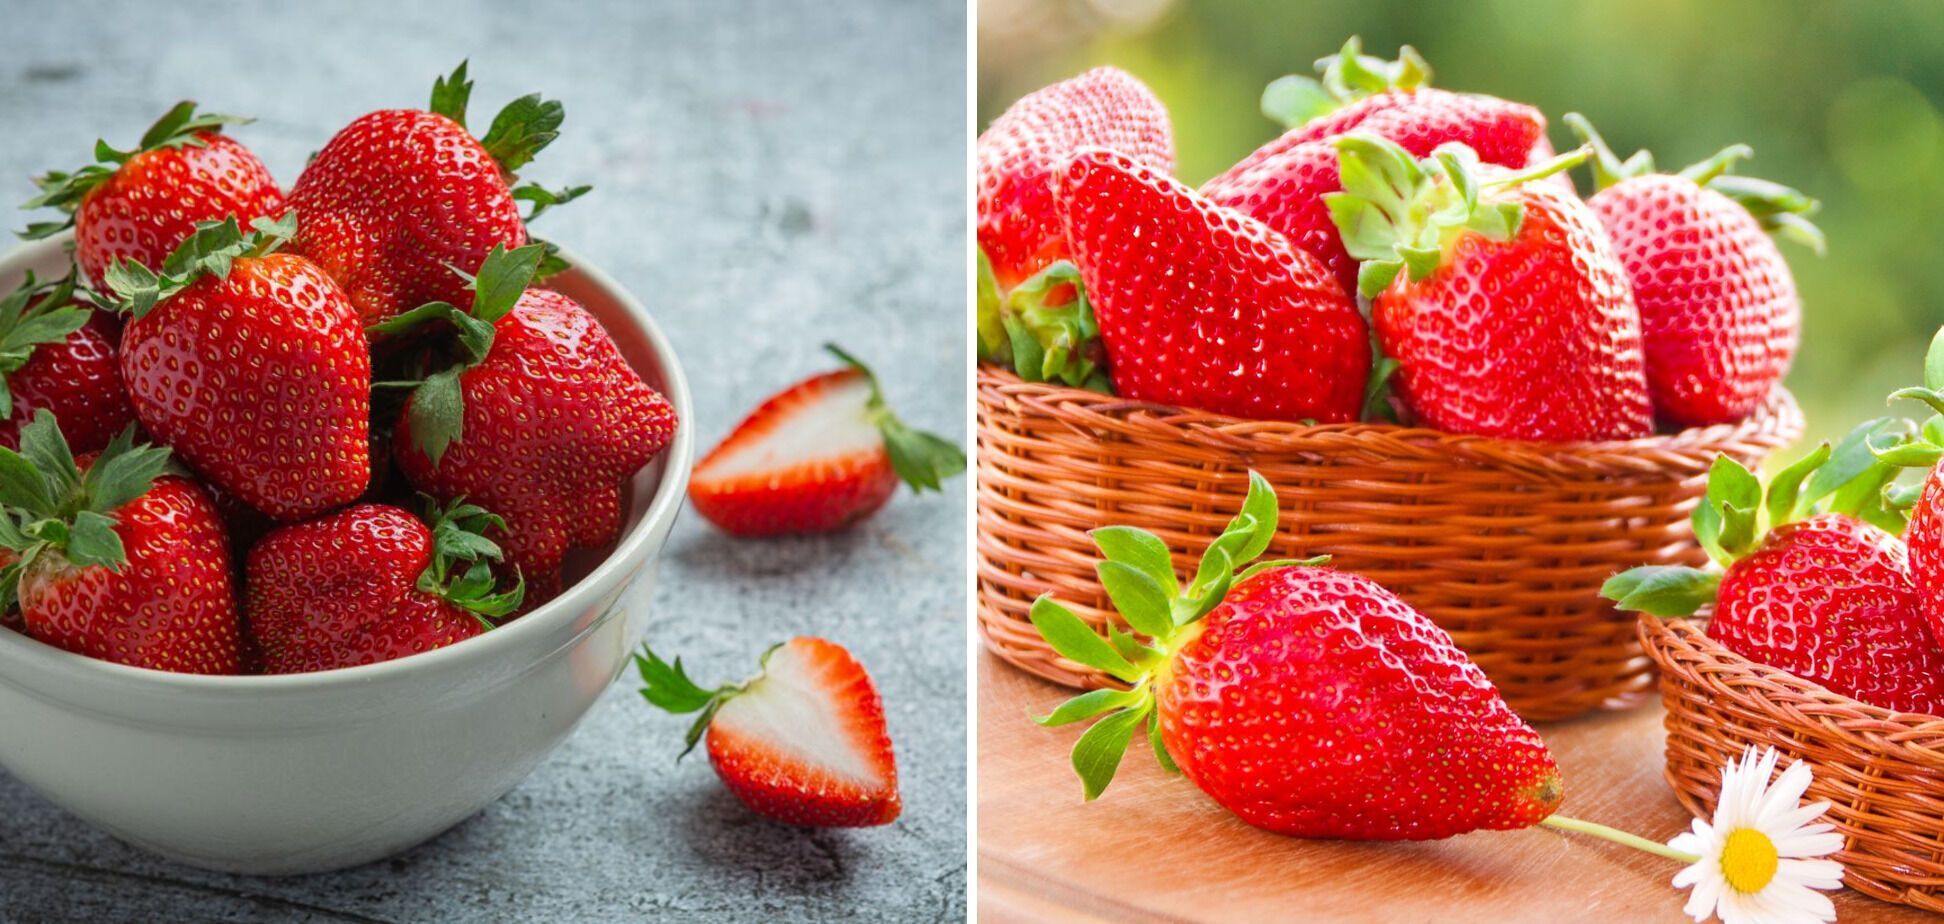 Market Strawberries